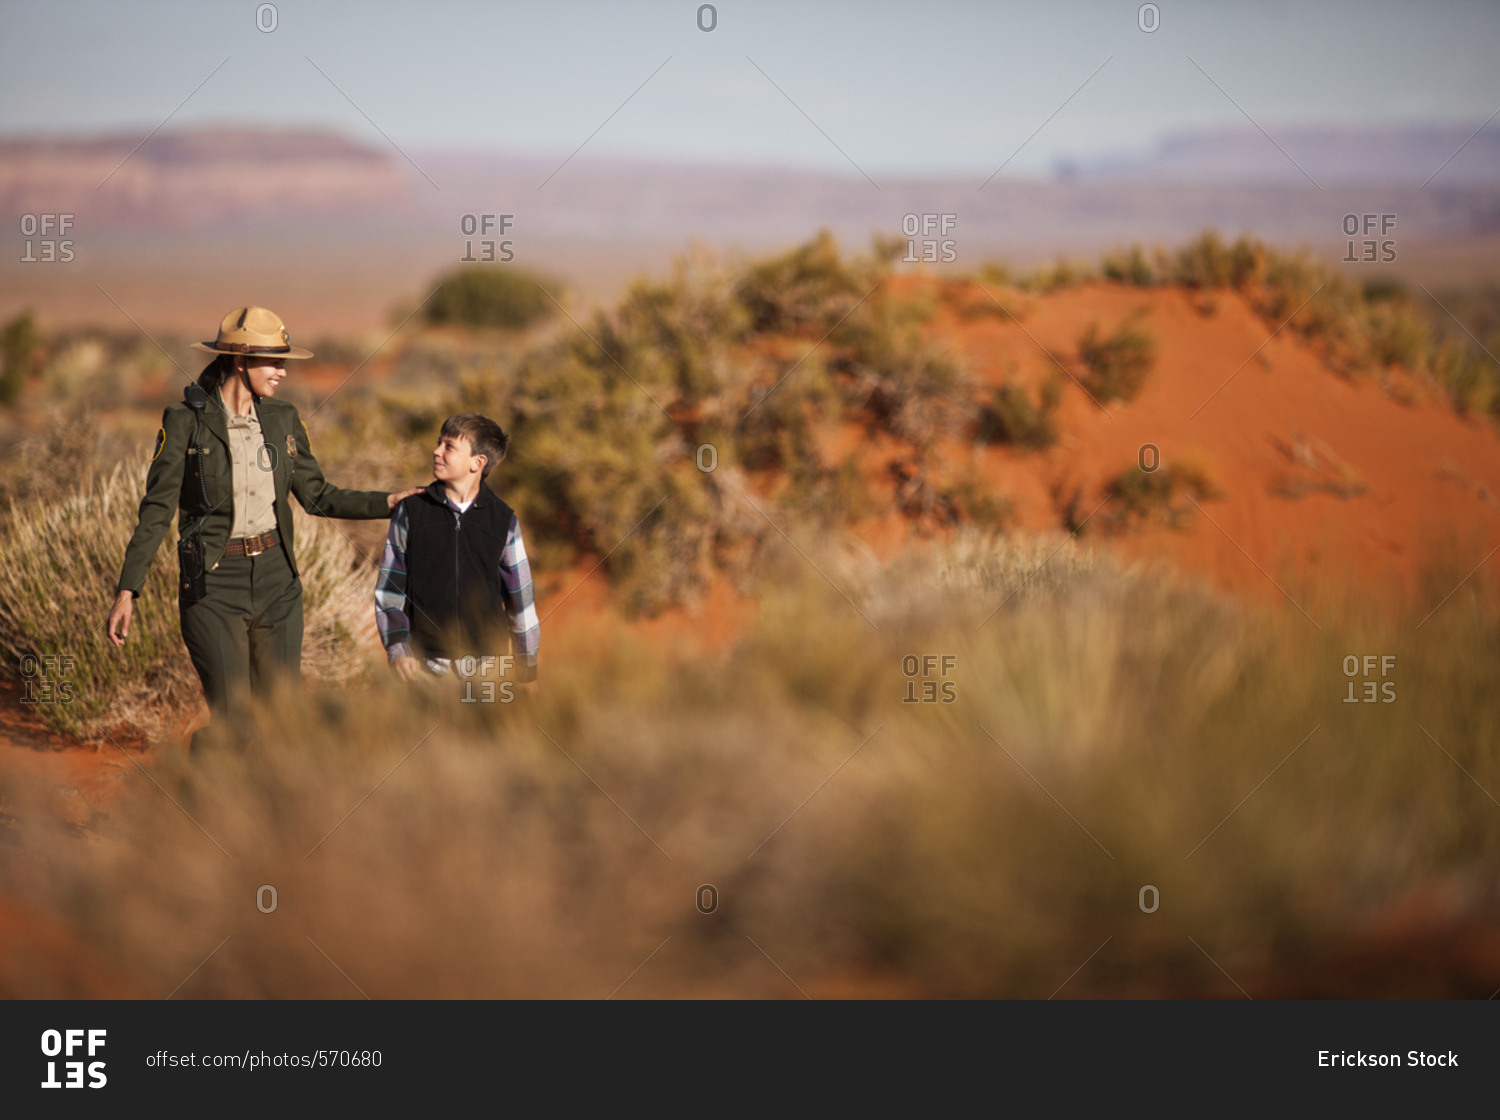 Park ranger walking with a boy in a desert